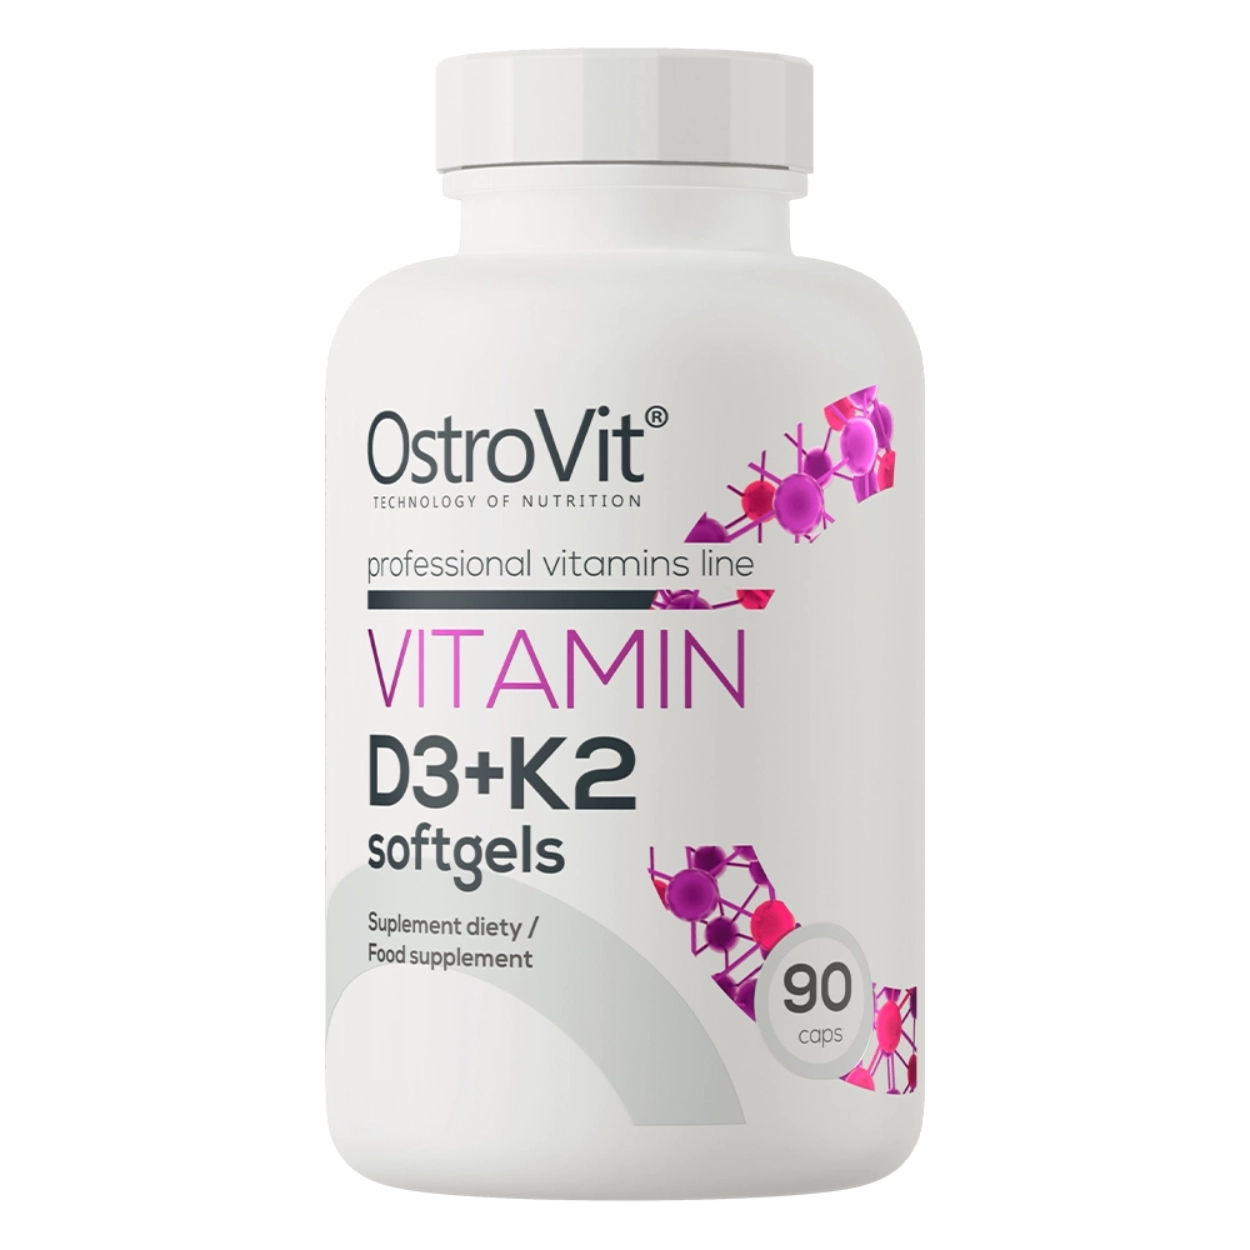 Opakowanie białe z etykietą OstroVit, suplement diety Vitamin D3+K2 w kapsułkach, 90 sztuk.